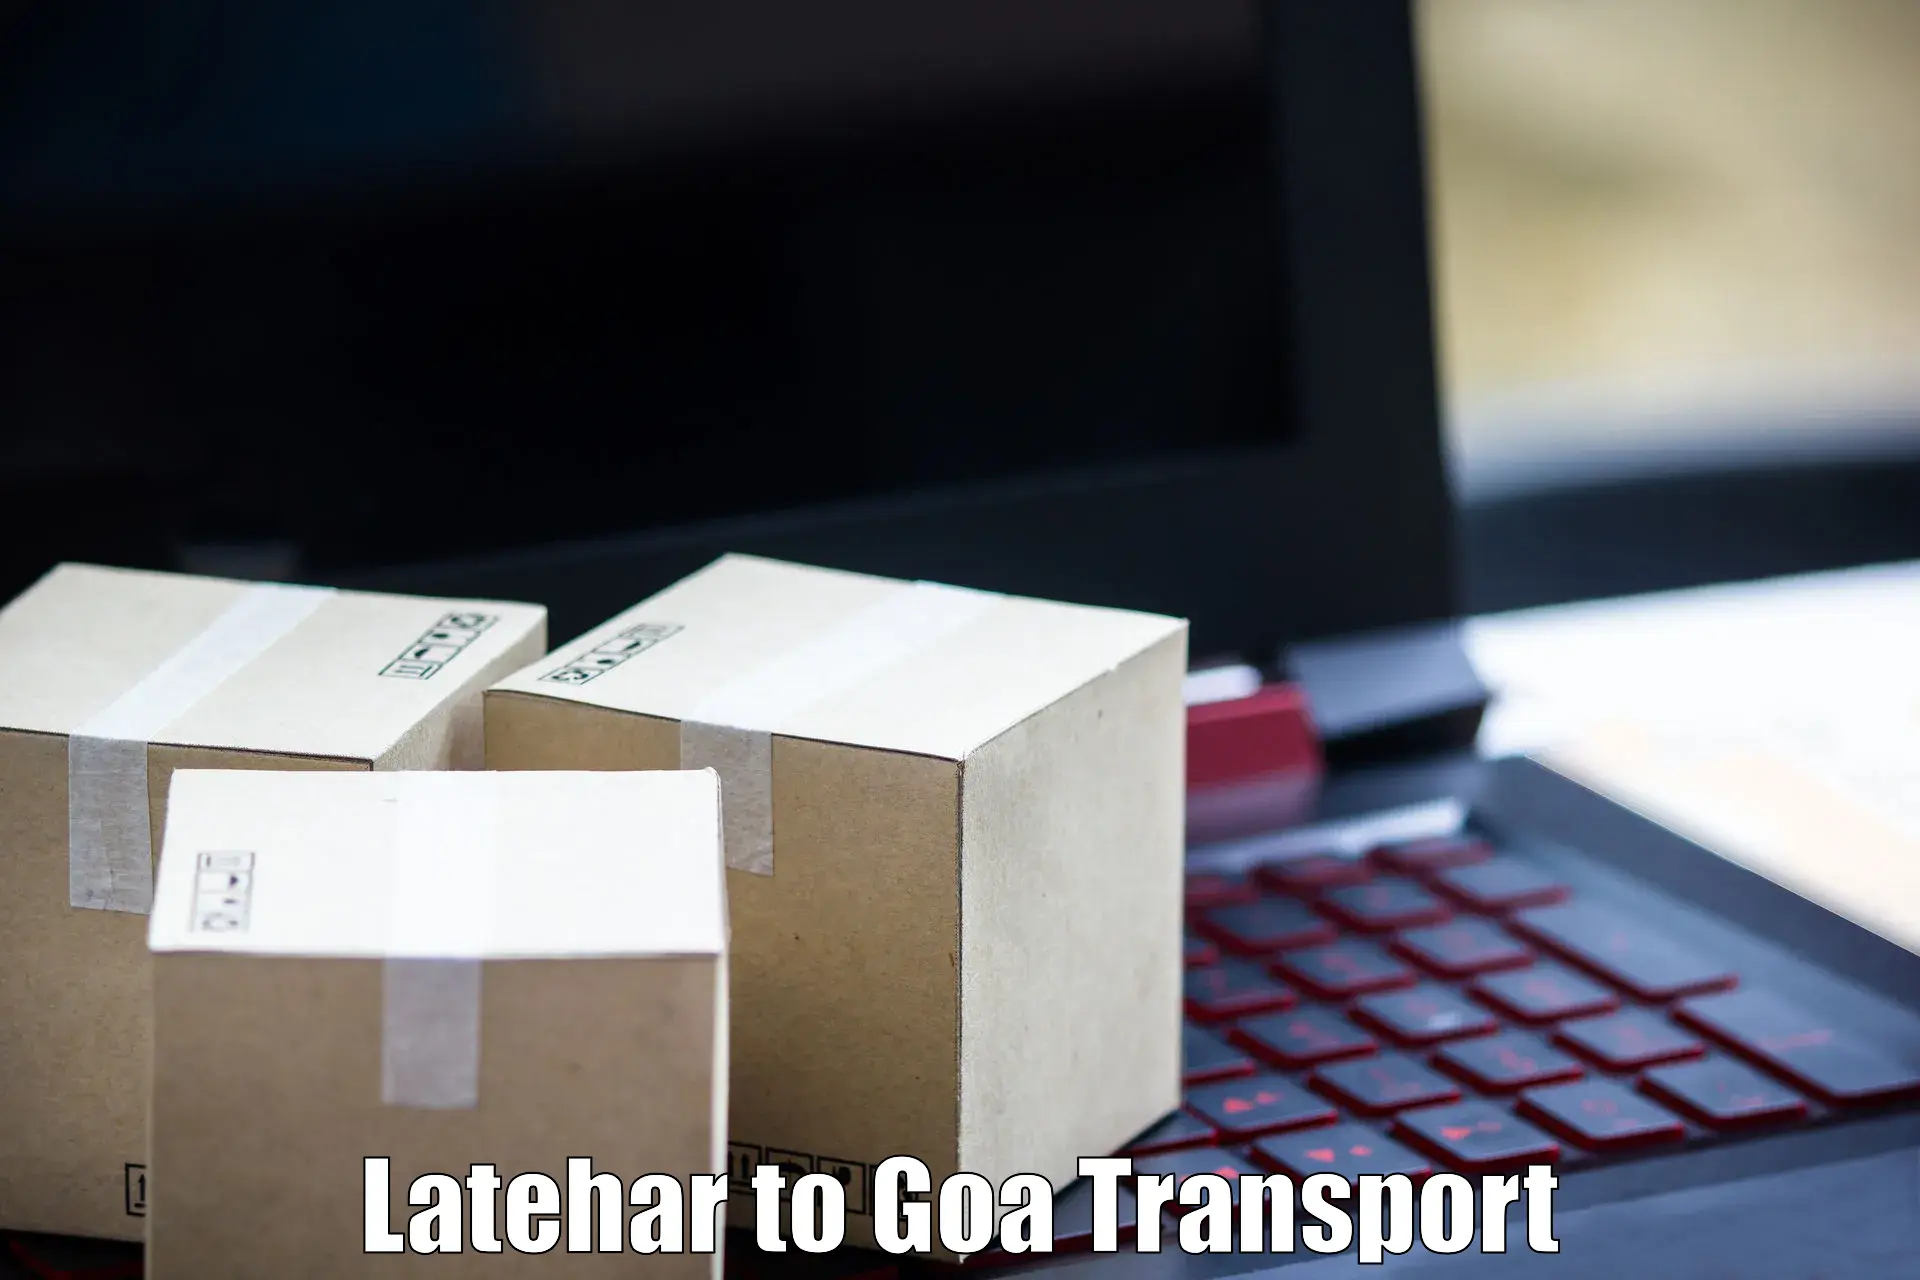 Bike transport service Latehar to Panaji